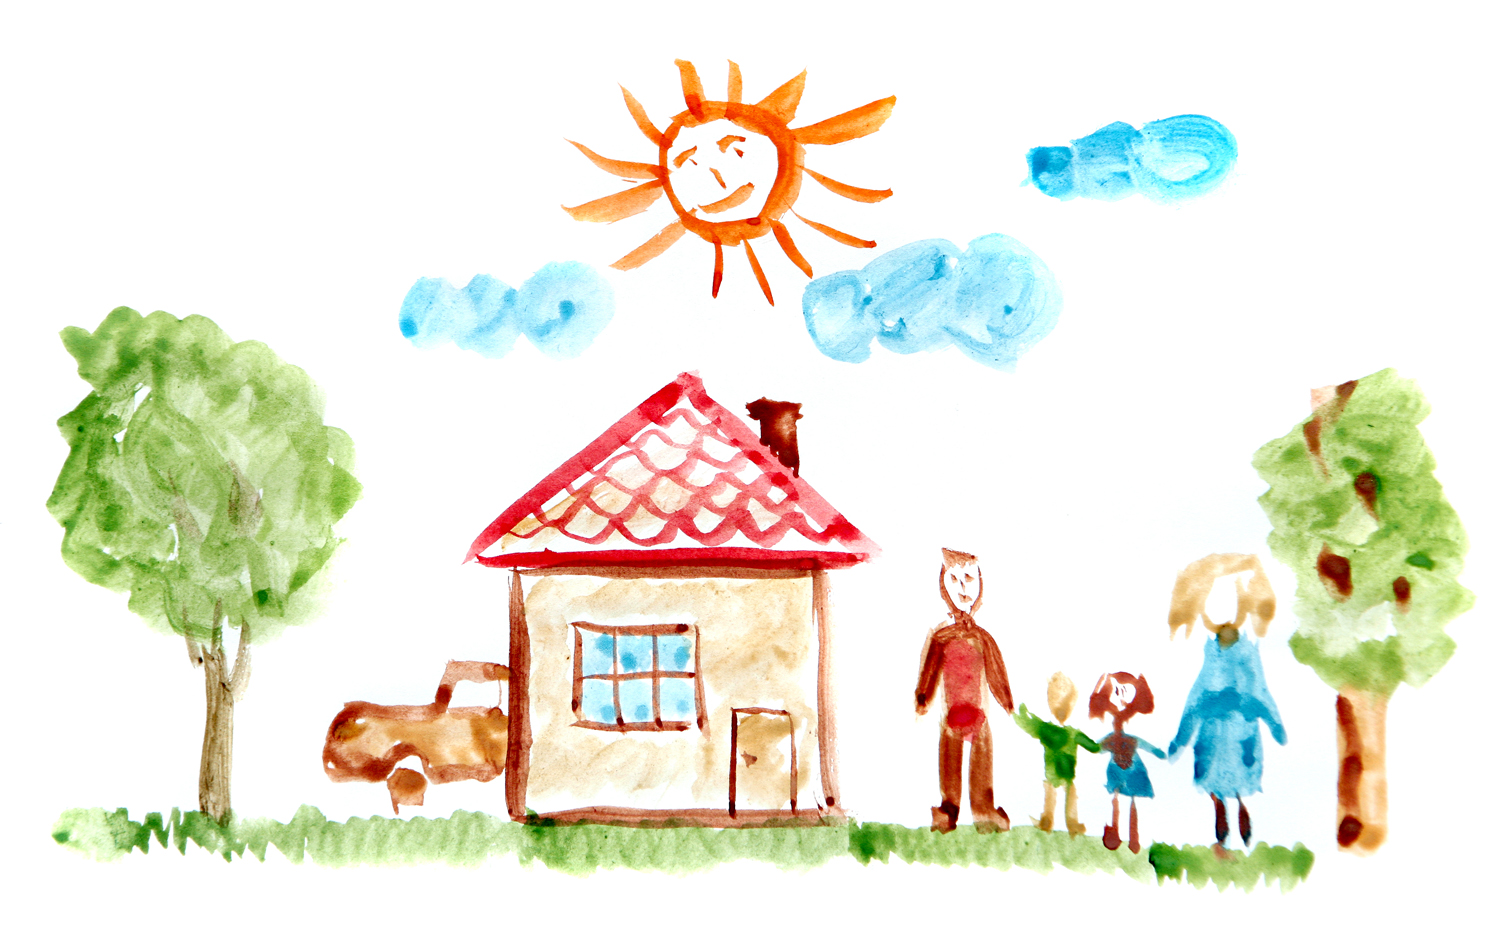 Проект будущее семьи. "Дом.дерево.человек""дом.дерево.человек". Детские рисунки. Домик детский рисунок. Семья рисунок.